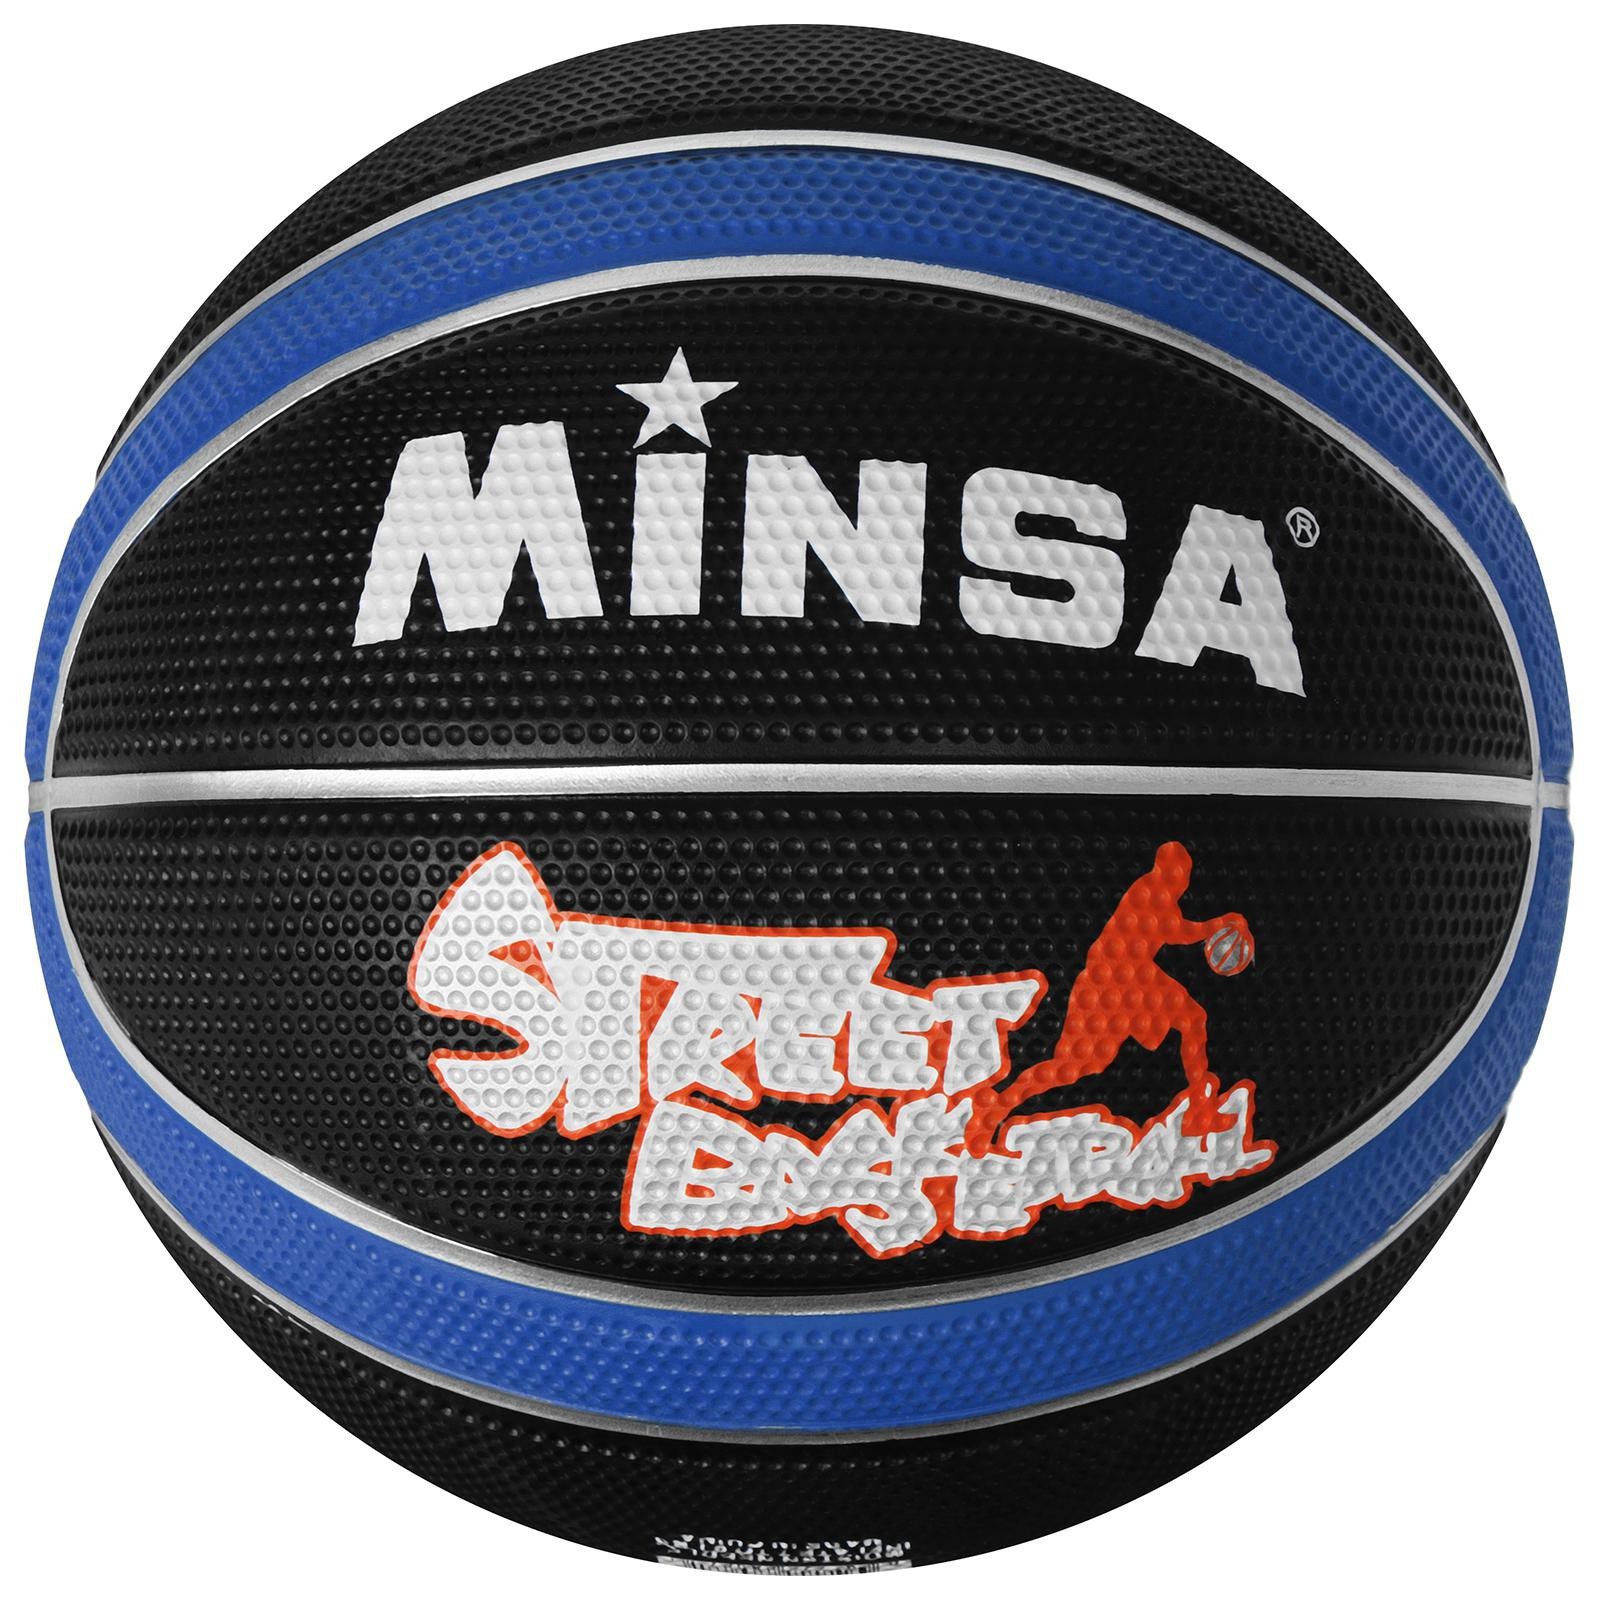 Мяч баскетбольный MINSA 8800, ПВХ, клееный, 8 панелей, р. 7, цвета микс 1040266